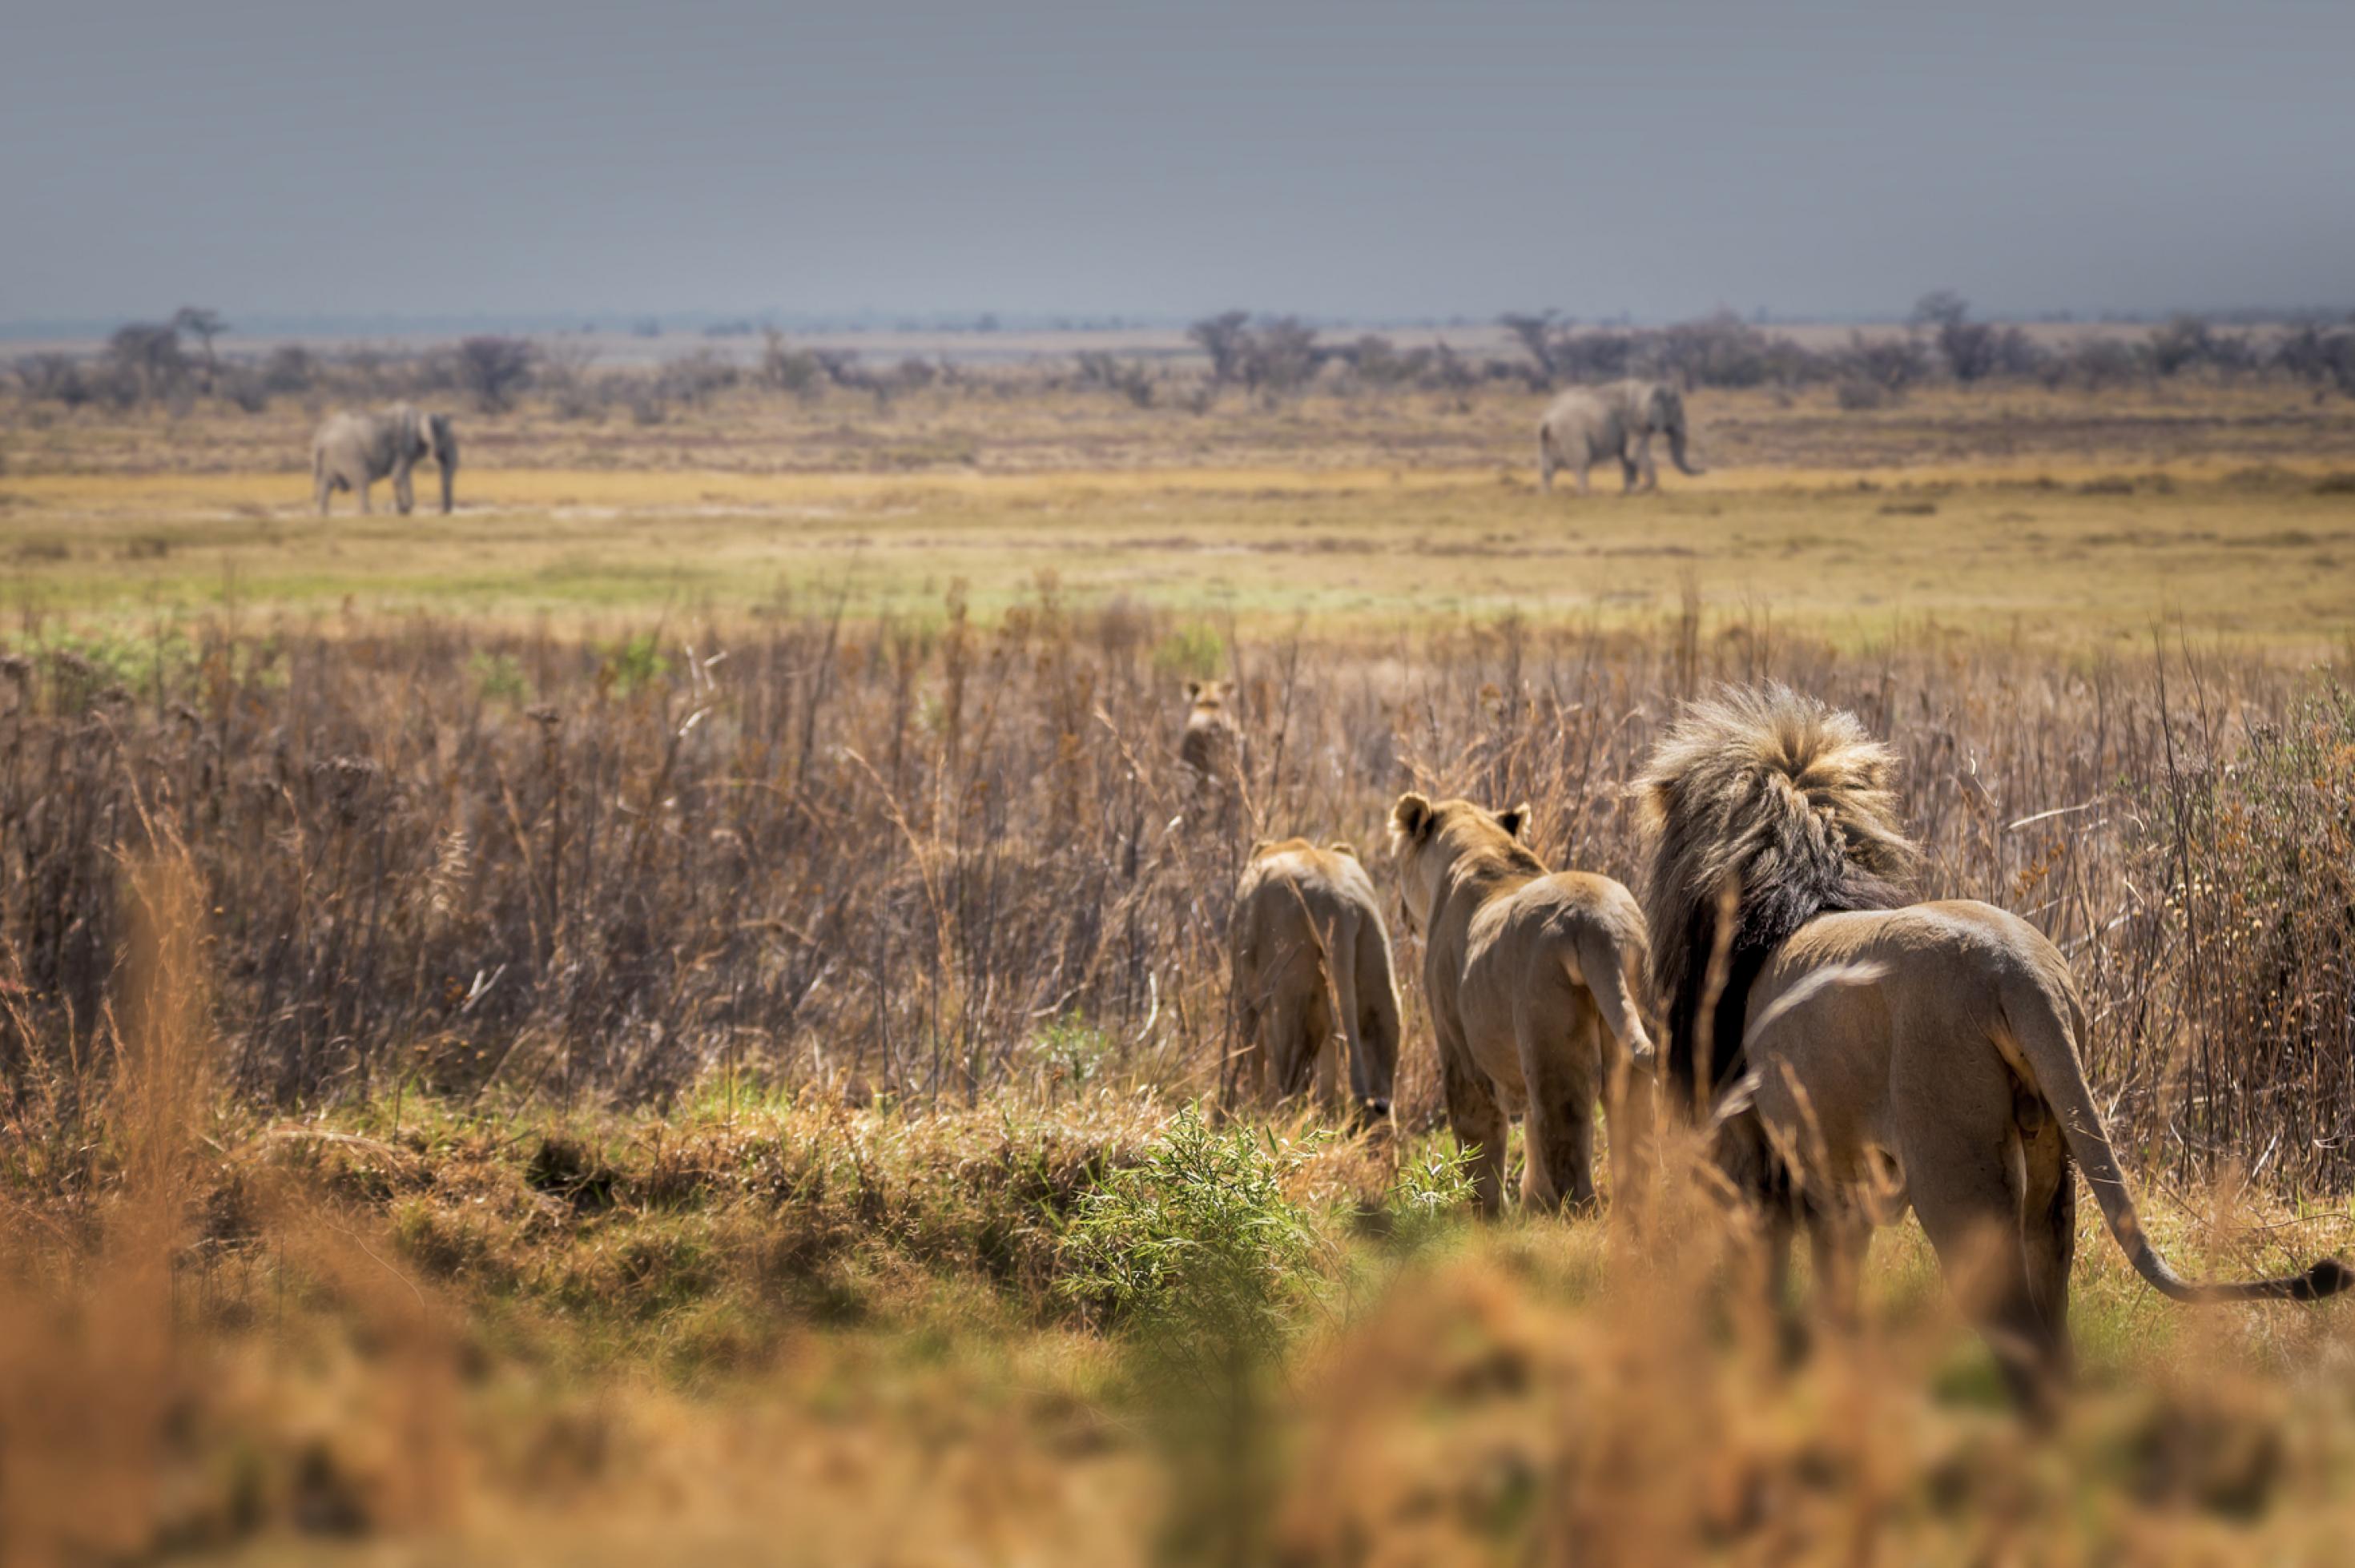 Löwen auf der Pirsch in einer baumlosen Savanne, im Hintergrund Elefanten.